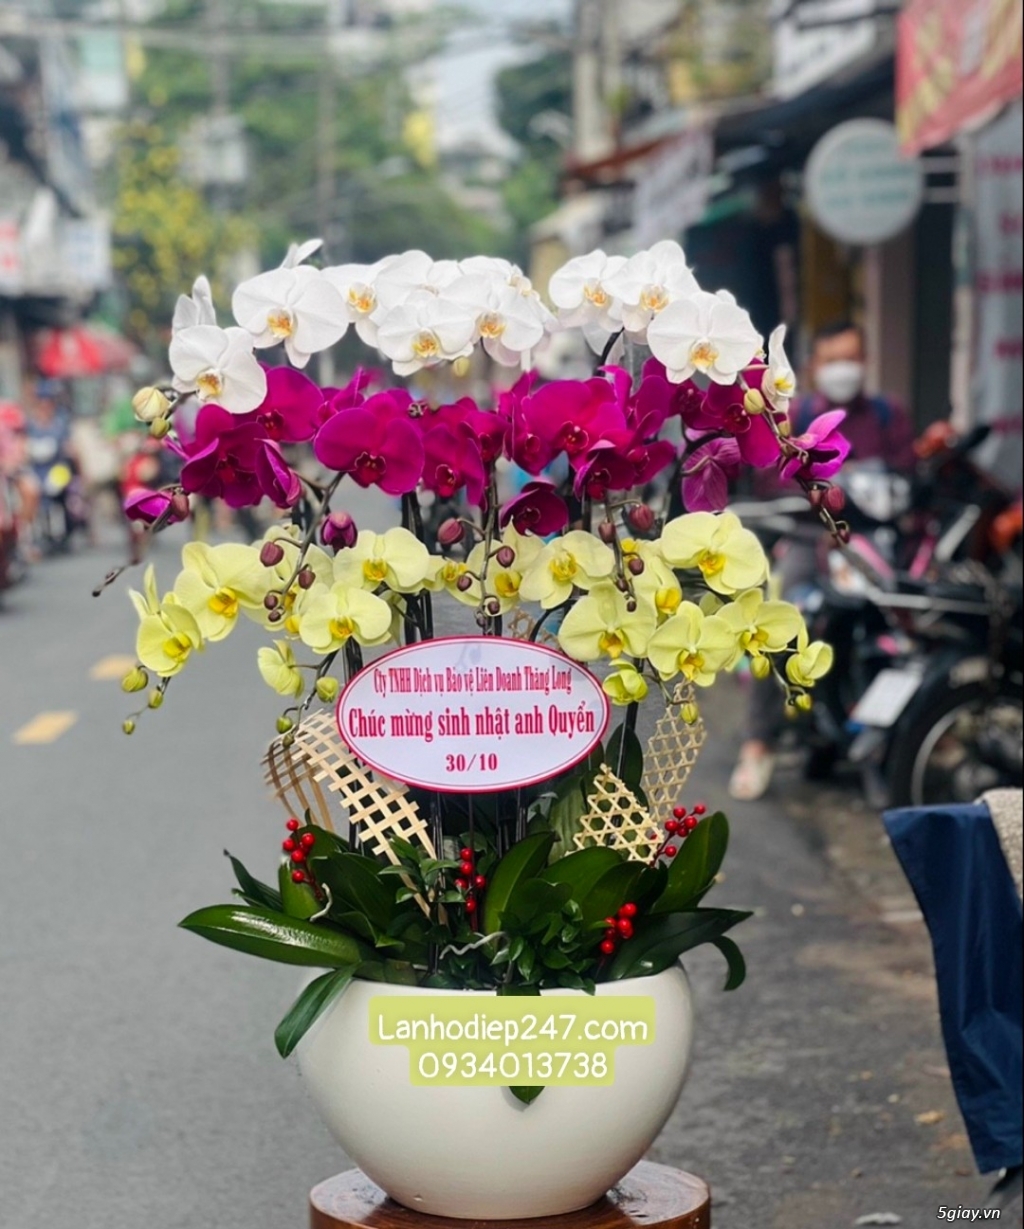 Shop hoa tuoi 24/7 tphcm phục vụ hoa lan hồ điệp uy tín toàn quốc - 18